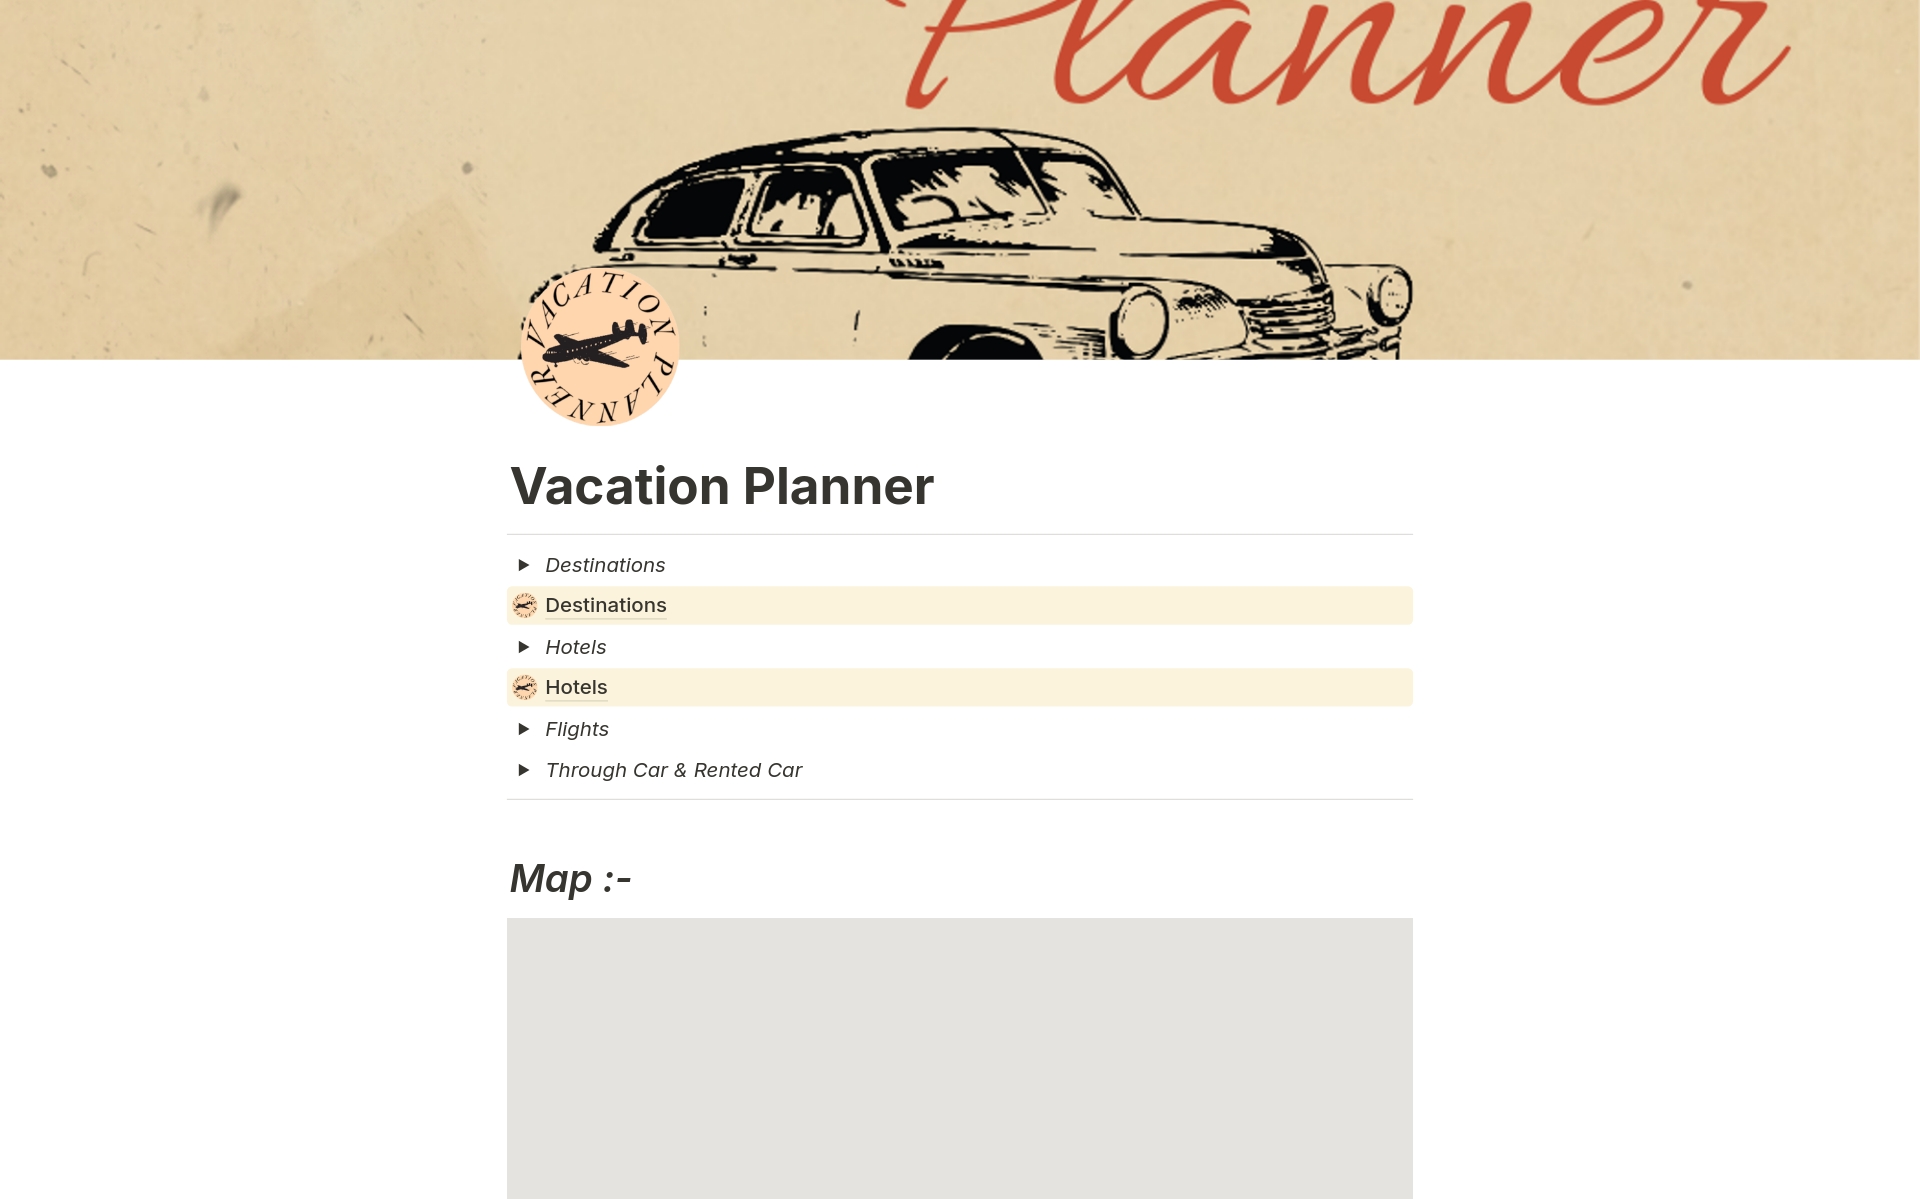 Uma prévia do modelo para Vacation Planner 